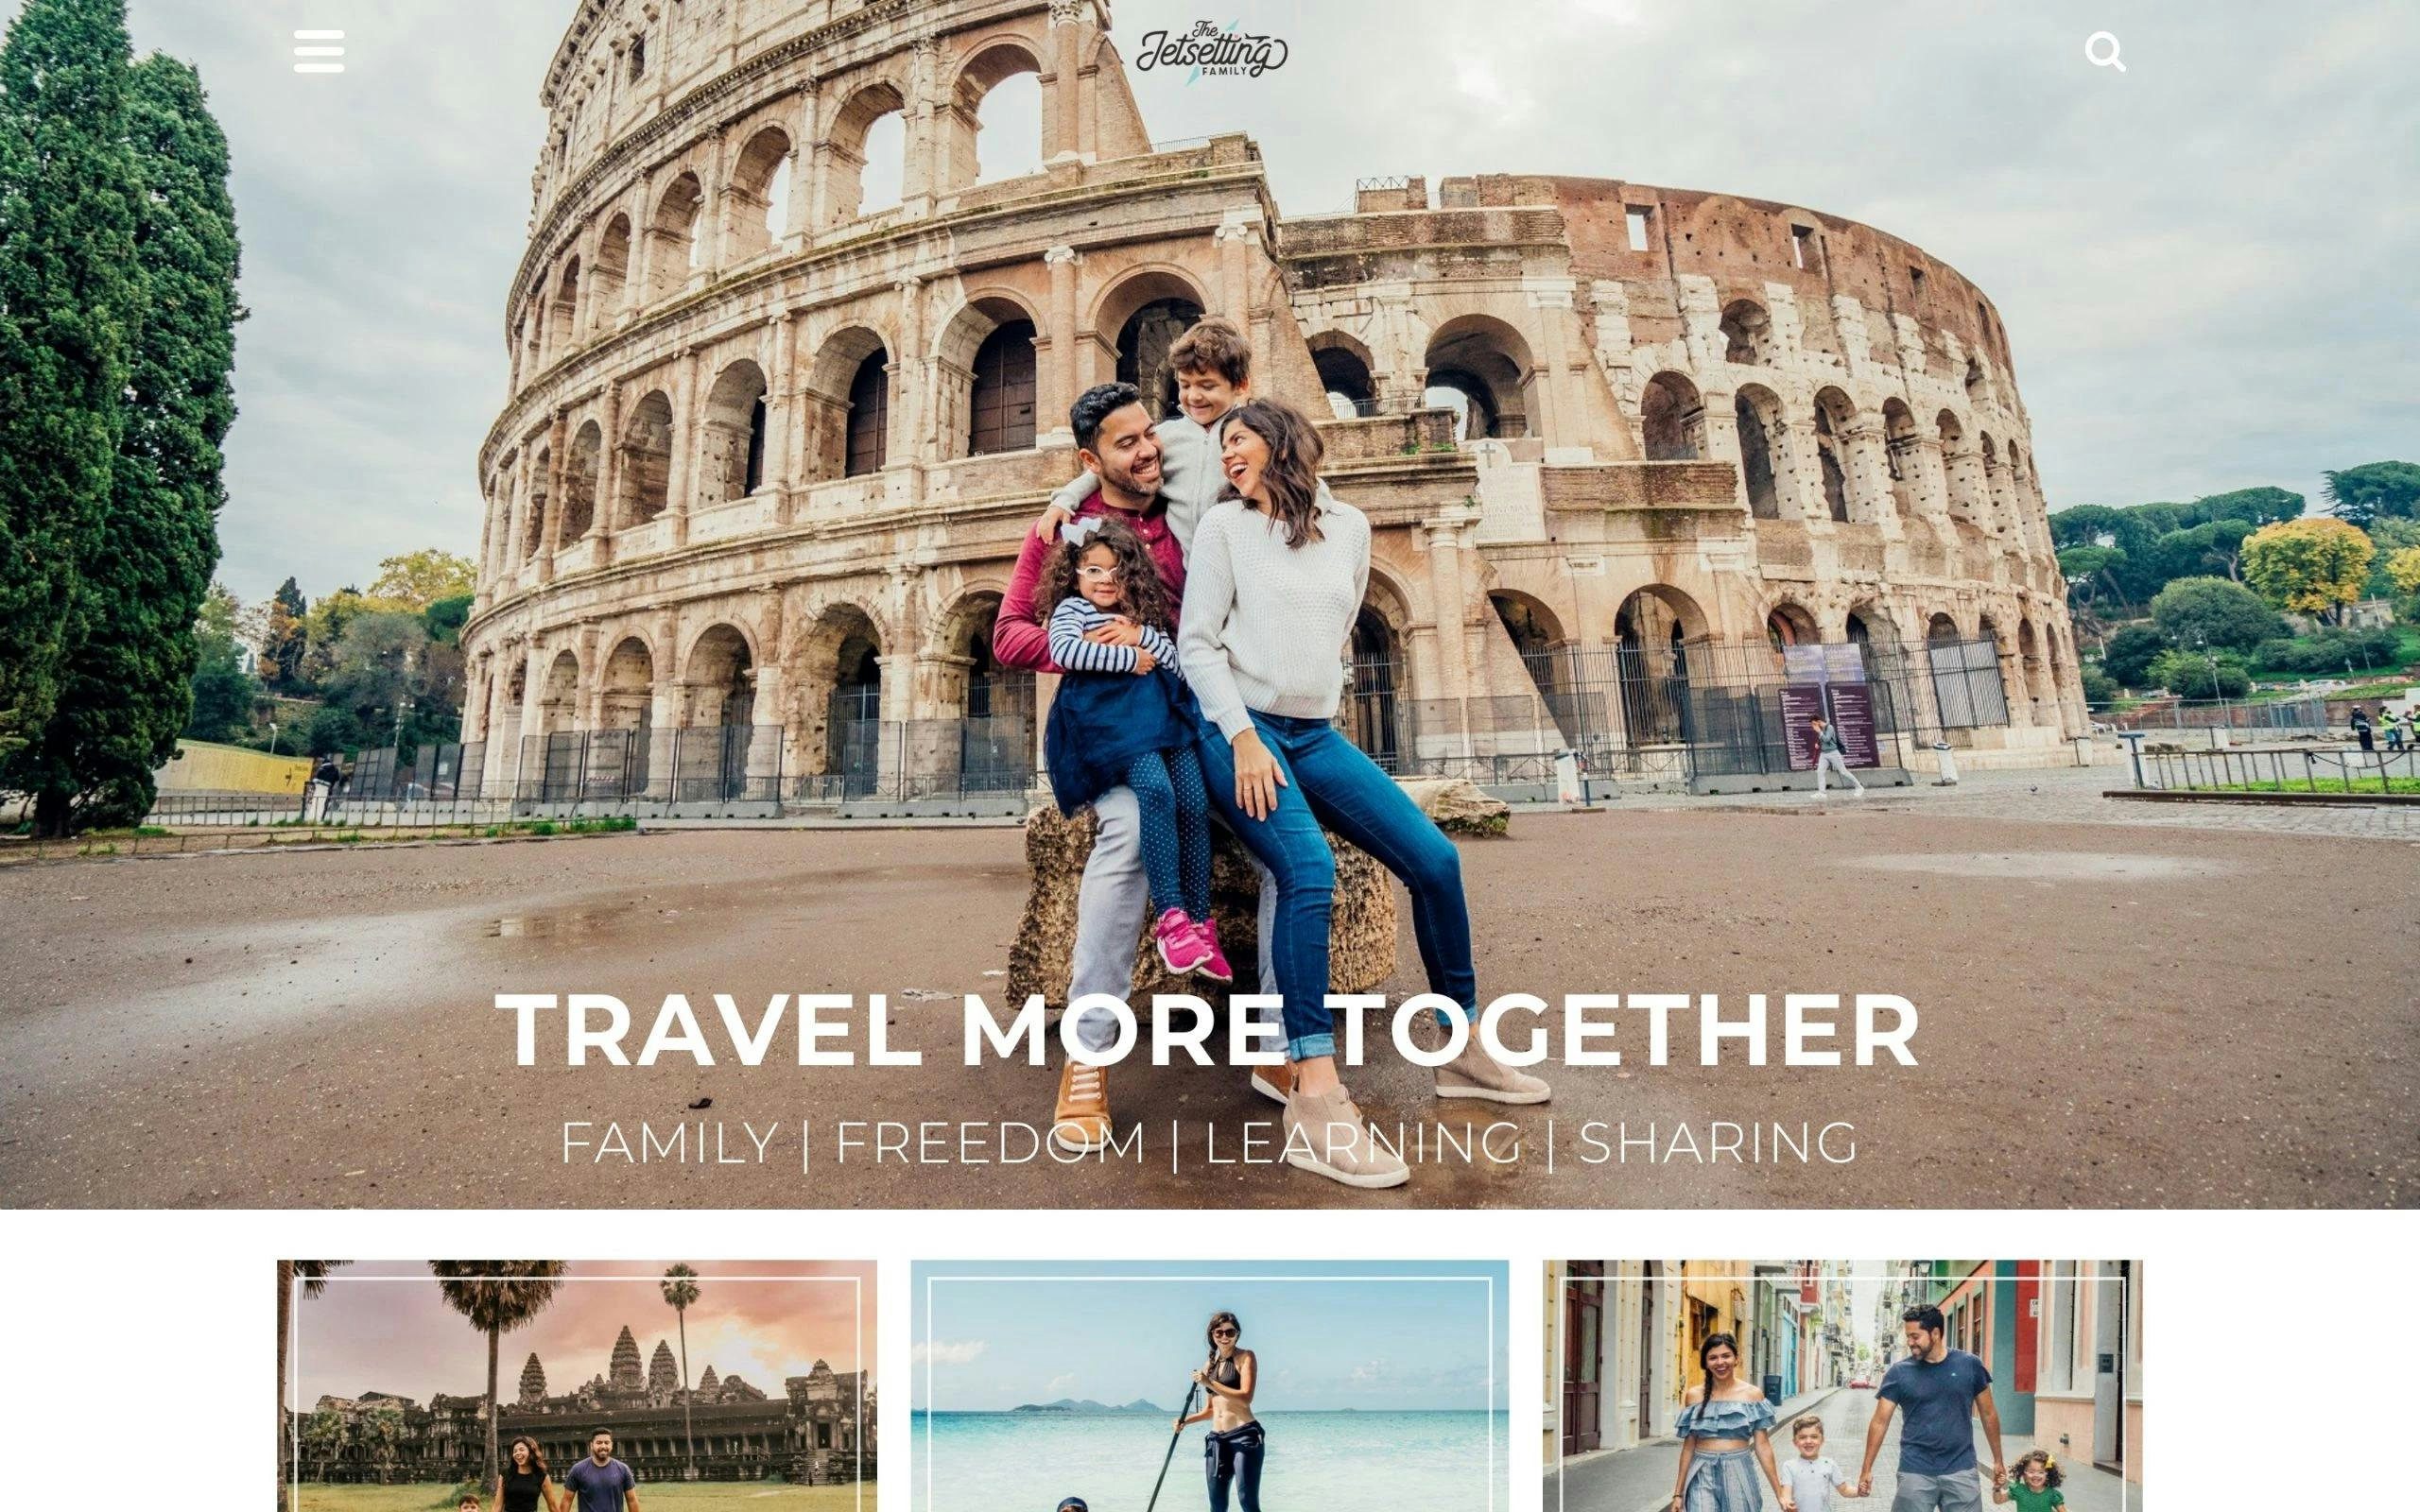 The Jetsetting Family travel blog